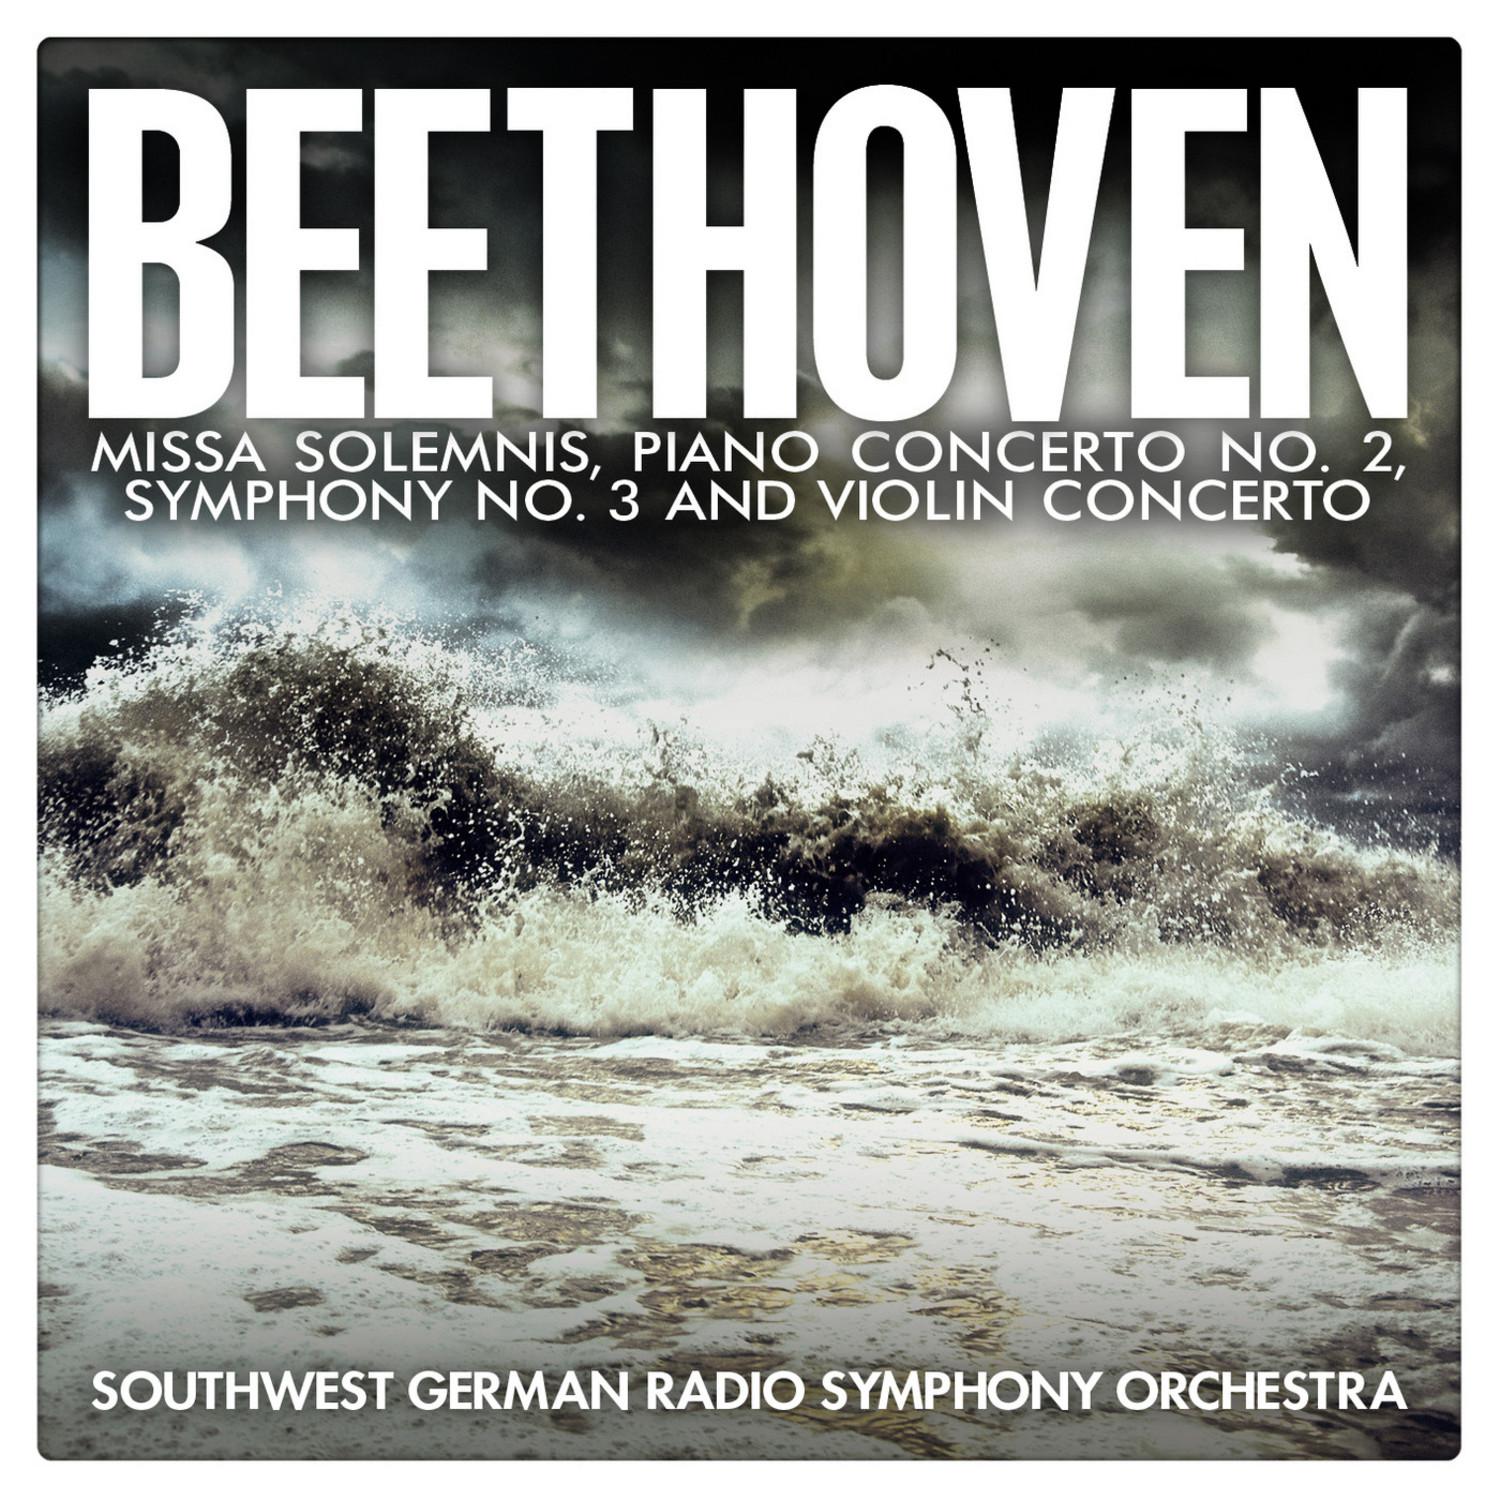 Beethoven: Missa Solemnis, Piano Concerto No. 2, Symphony No. 3 and Violin Concerto